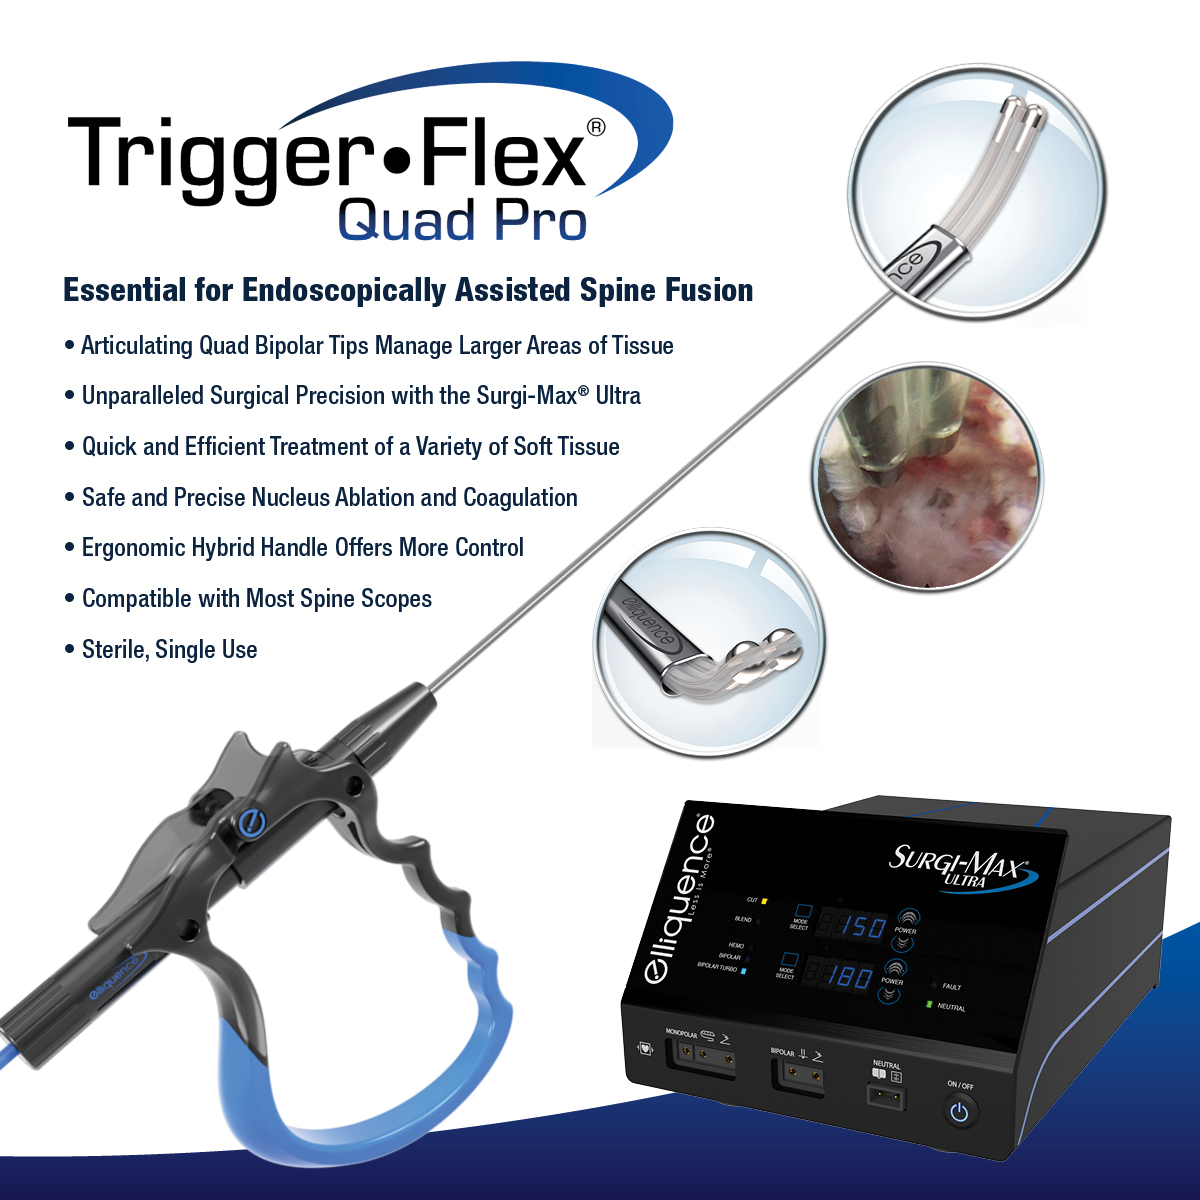 Trigger-Flex Quad Pro